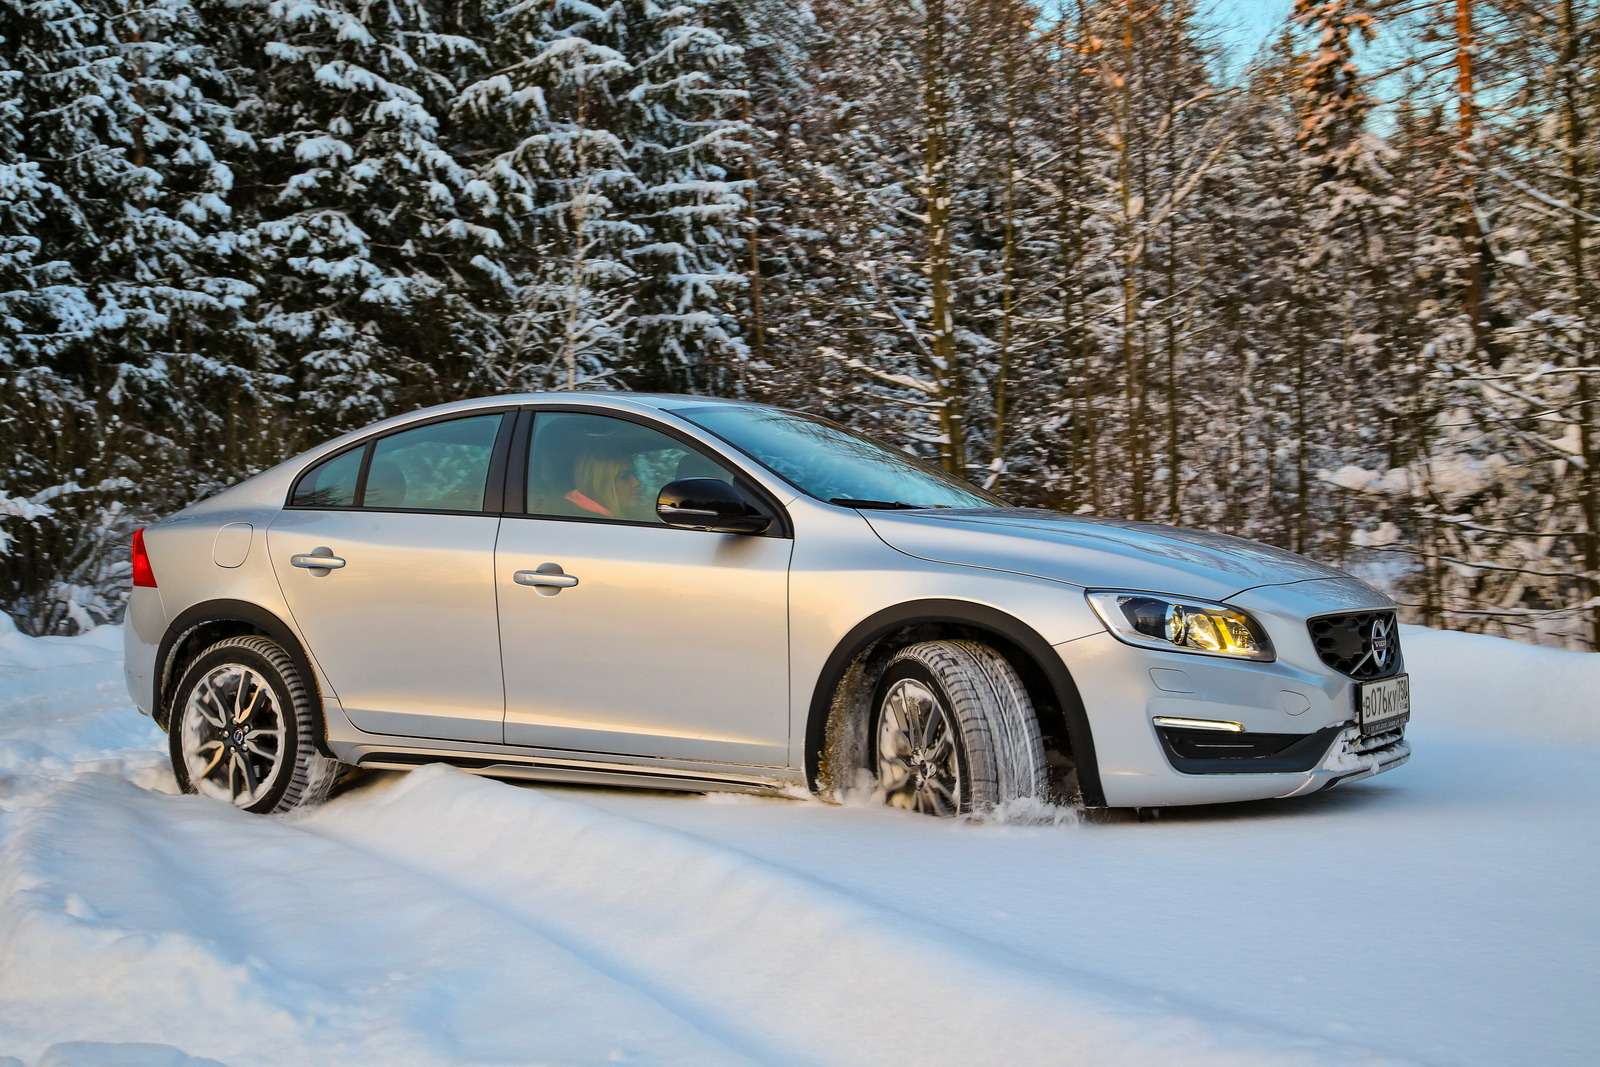 Volvo S60 Cross Country. Цена полноприводной версии — 2 240 000 рублей. Двигатель: бензиновый 2.0 (245 л.с.) Трансмиссия: 6-ступенчатый автомат.